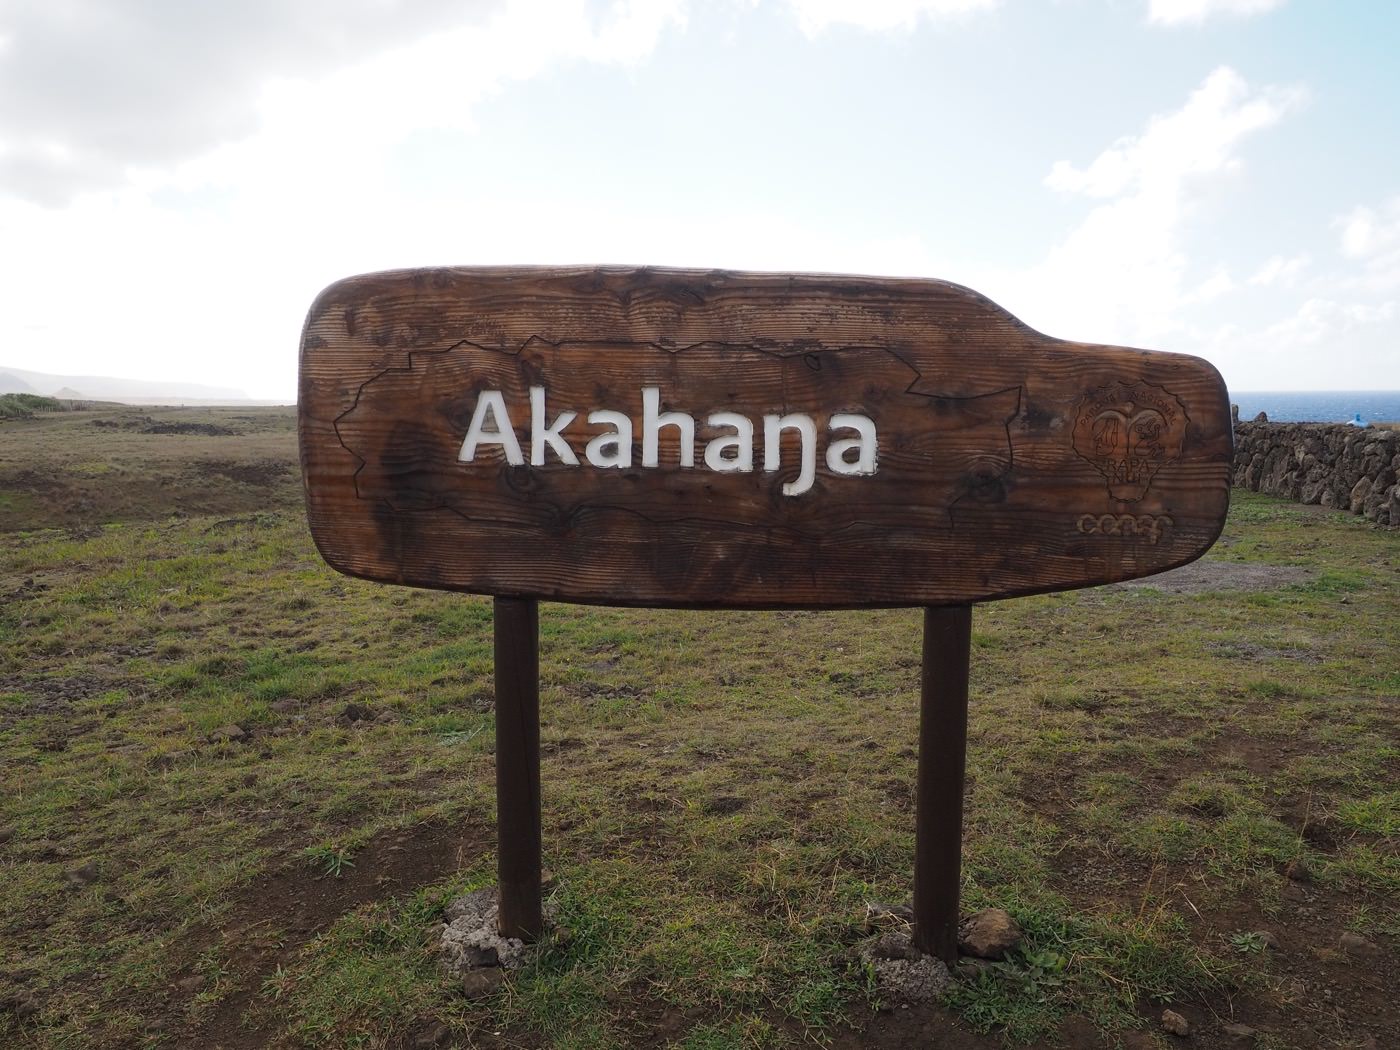 復活節島景點 海邊摩埃一日遊（上）海邊 15 尊巨大摩埃 Ahu Tongariki & Ahu Akahanga - 一口冒險 Bitesized Adventure